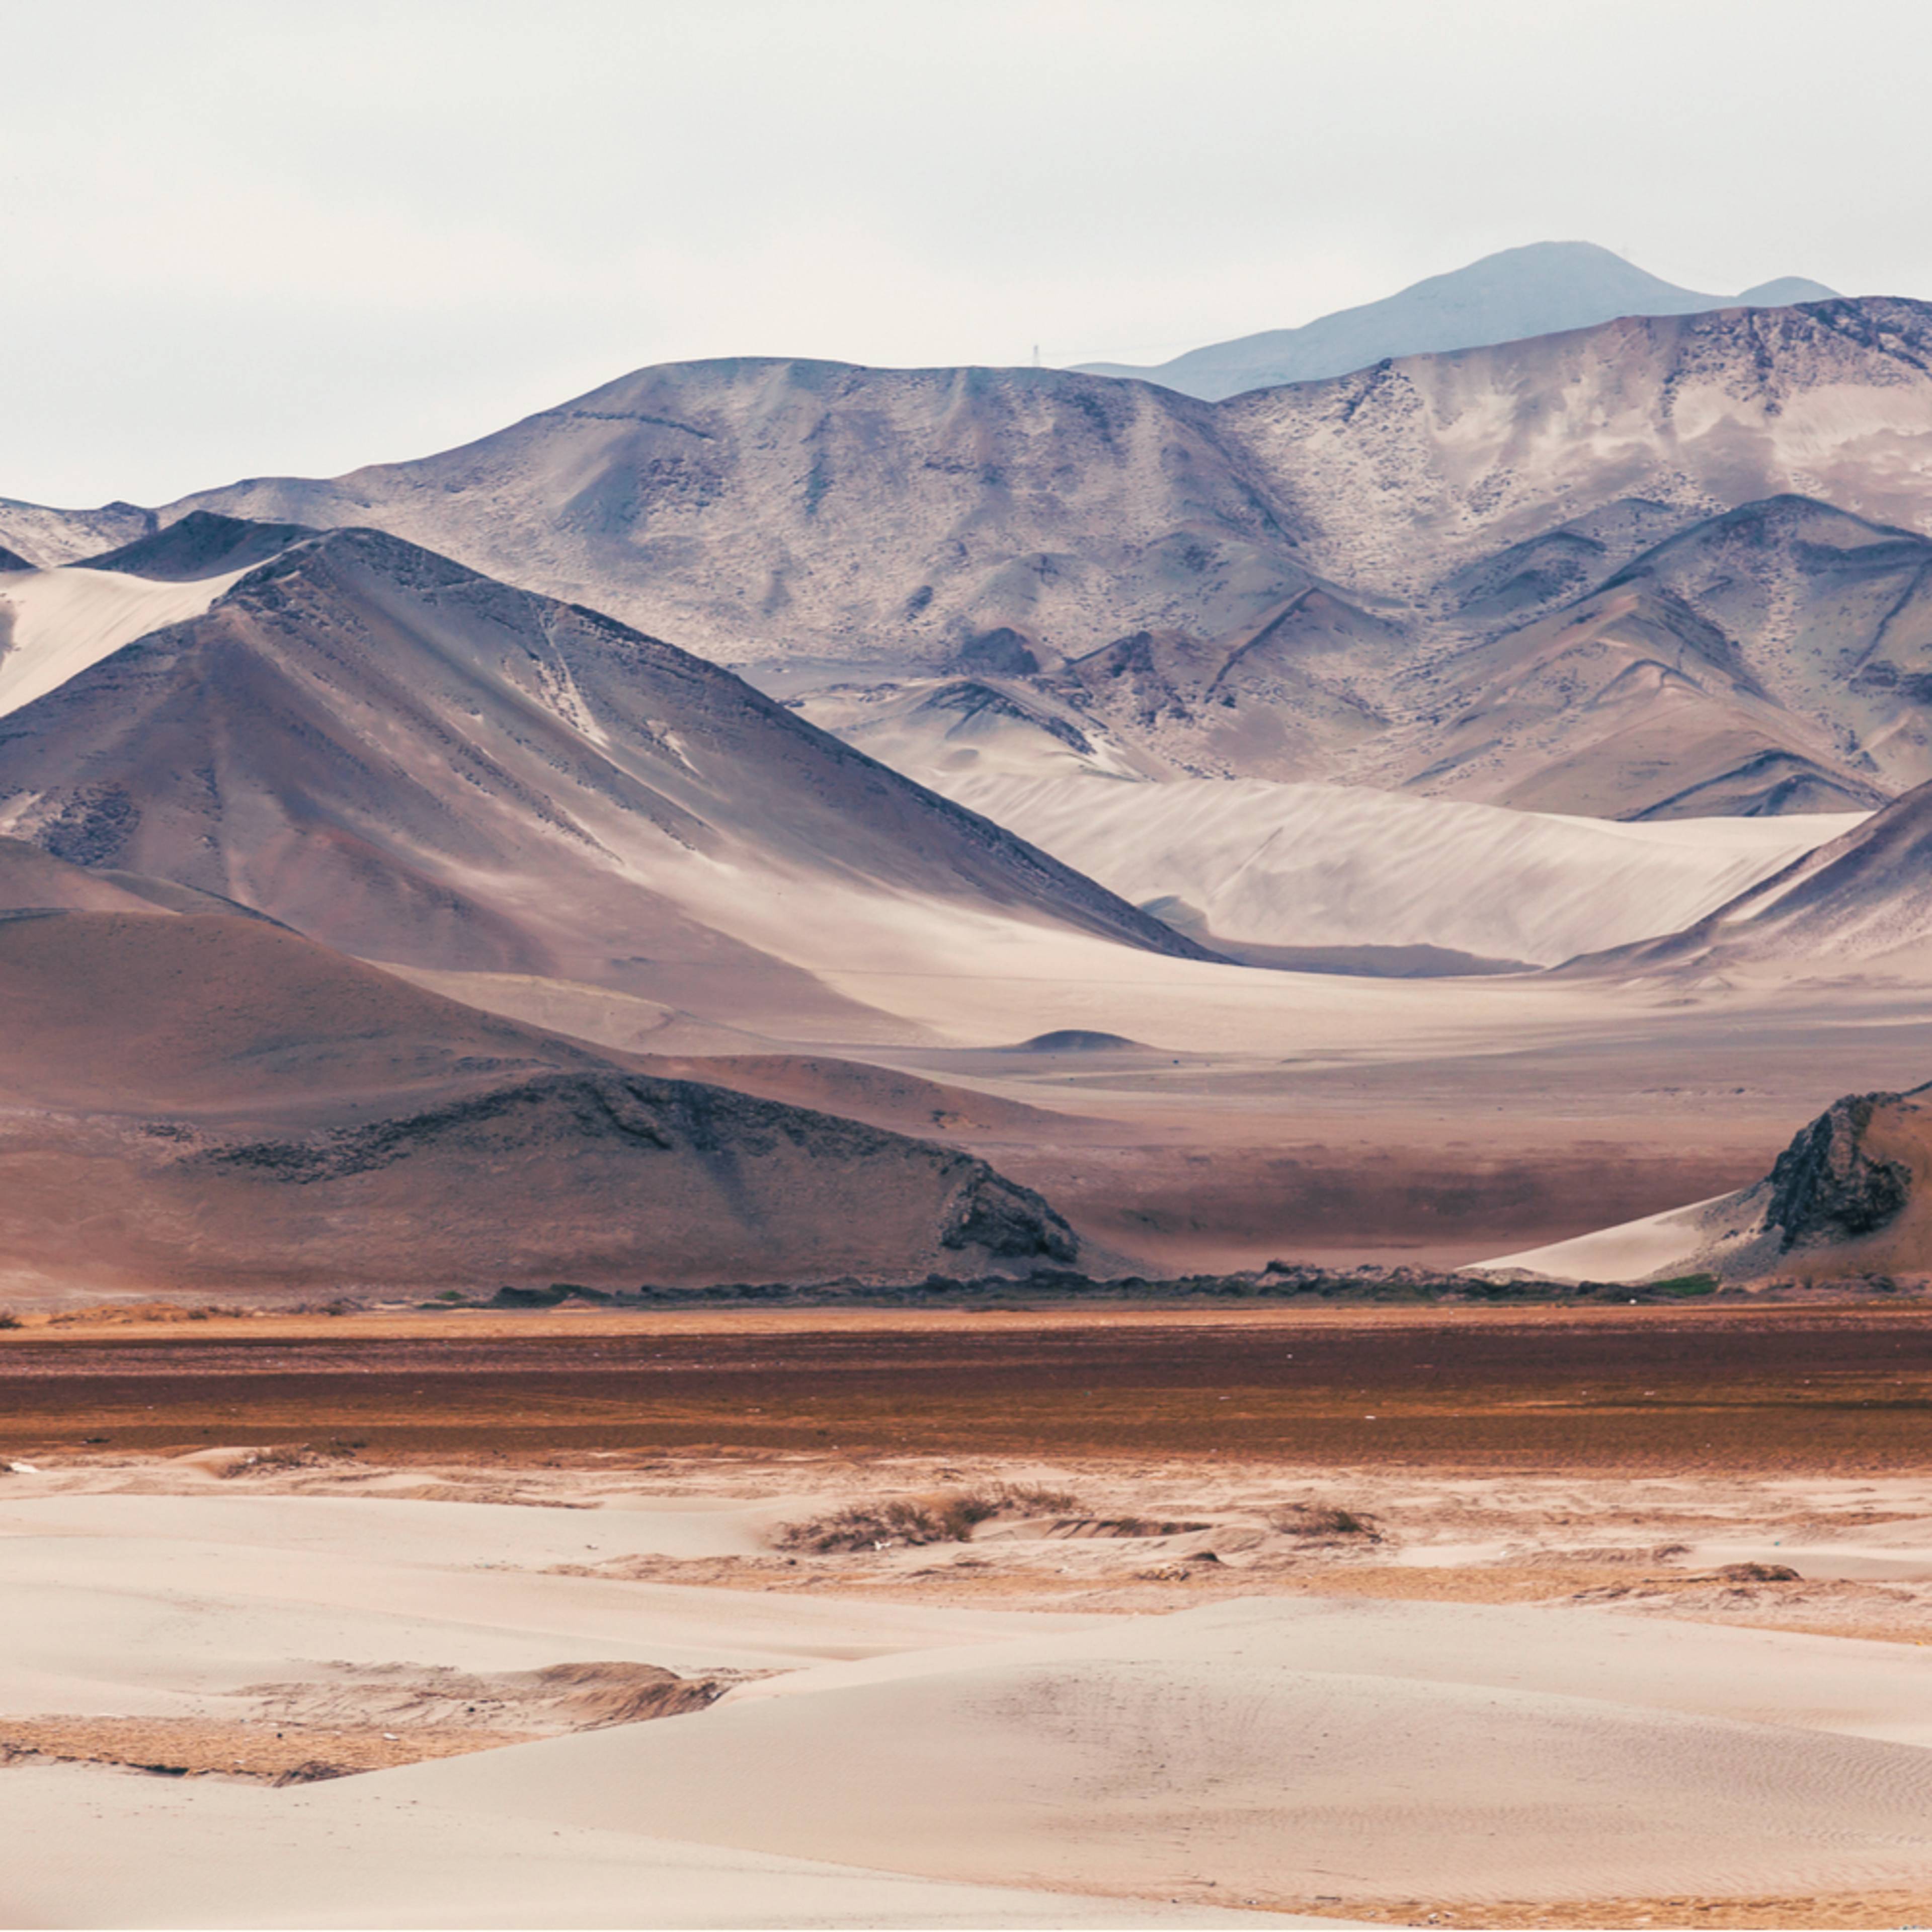 Individuelle Wüstentouren Peru - Reise jetzt individuell gestalten